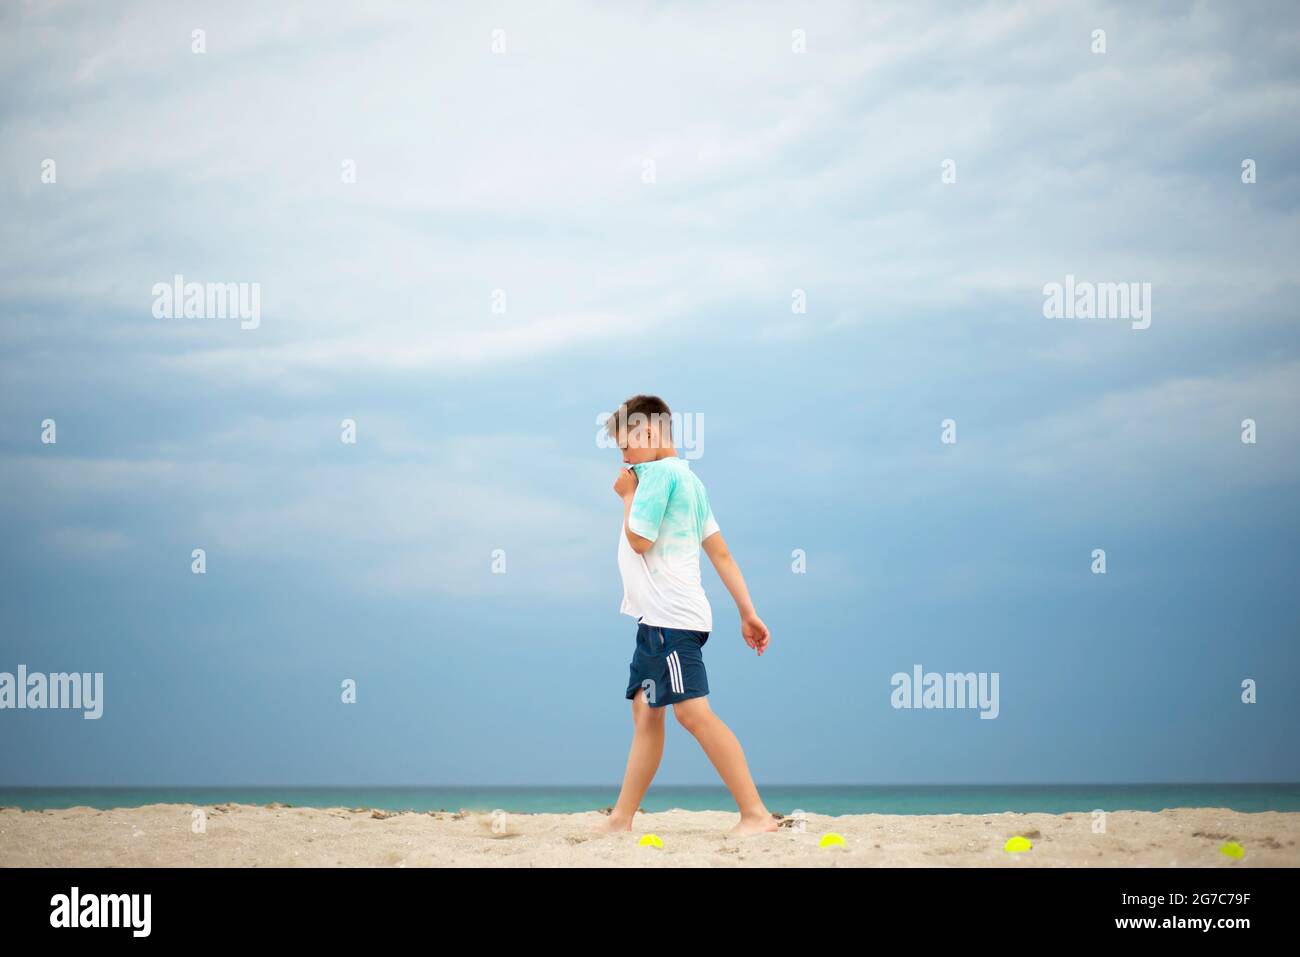 Entraînement de garçon sur une plage de sable. Des balles de tennis sont réparties sur la côte. Repos entre les exercices. Banque D'Images